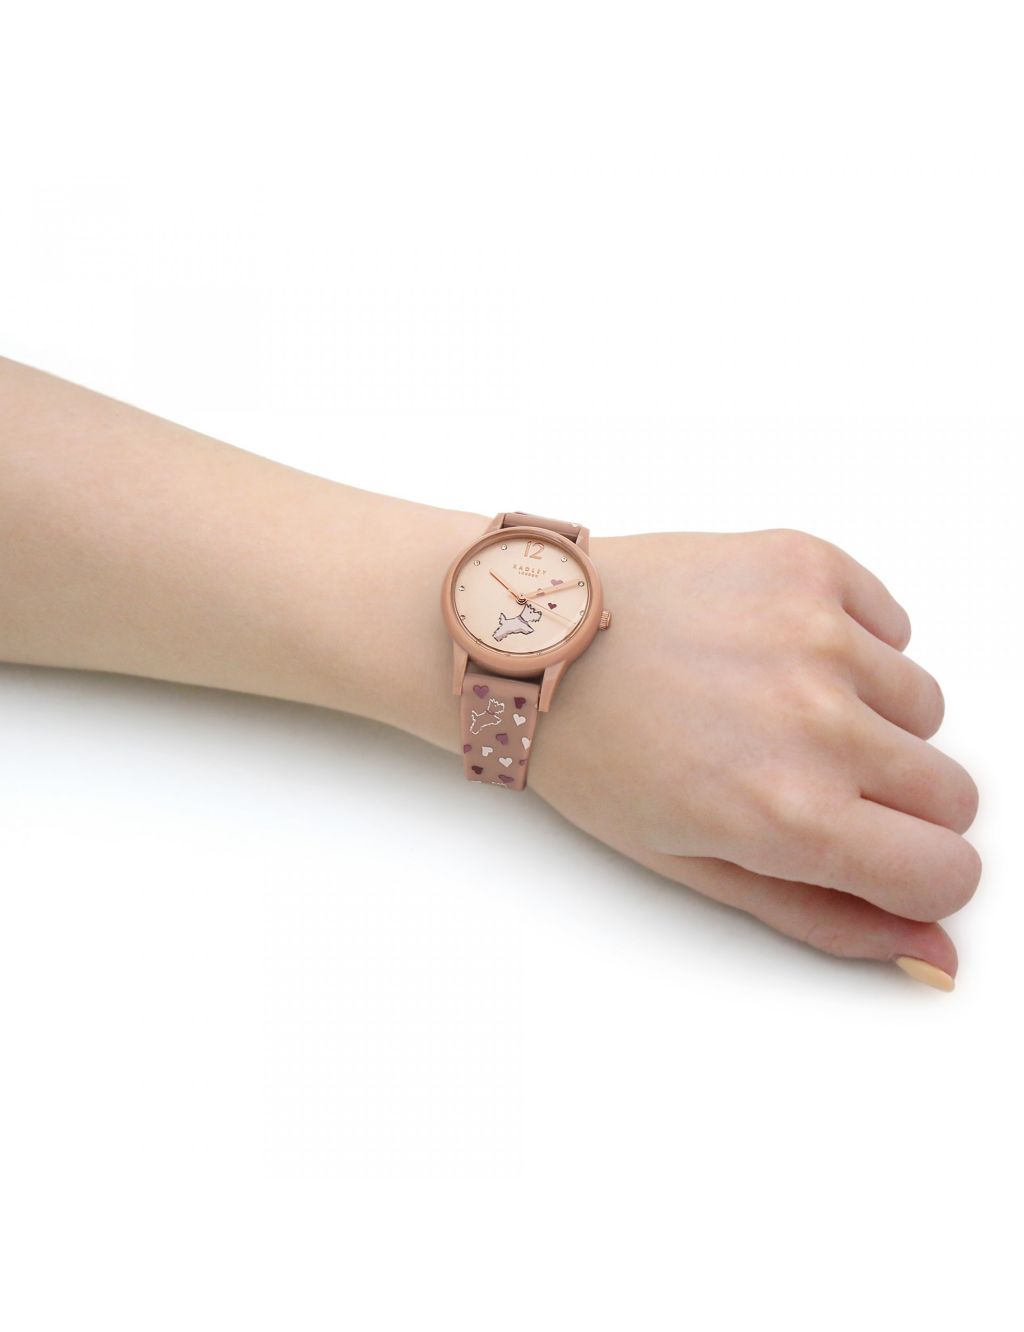 Radley Scottie Dog Pink Leather Watch image 2